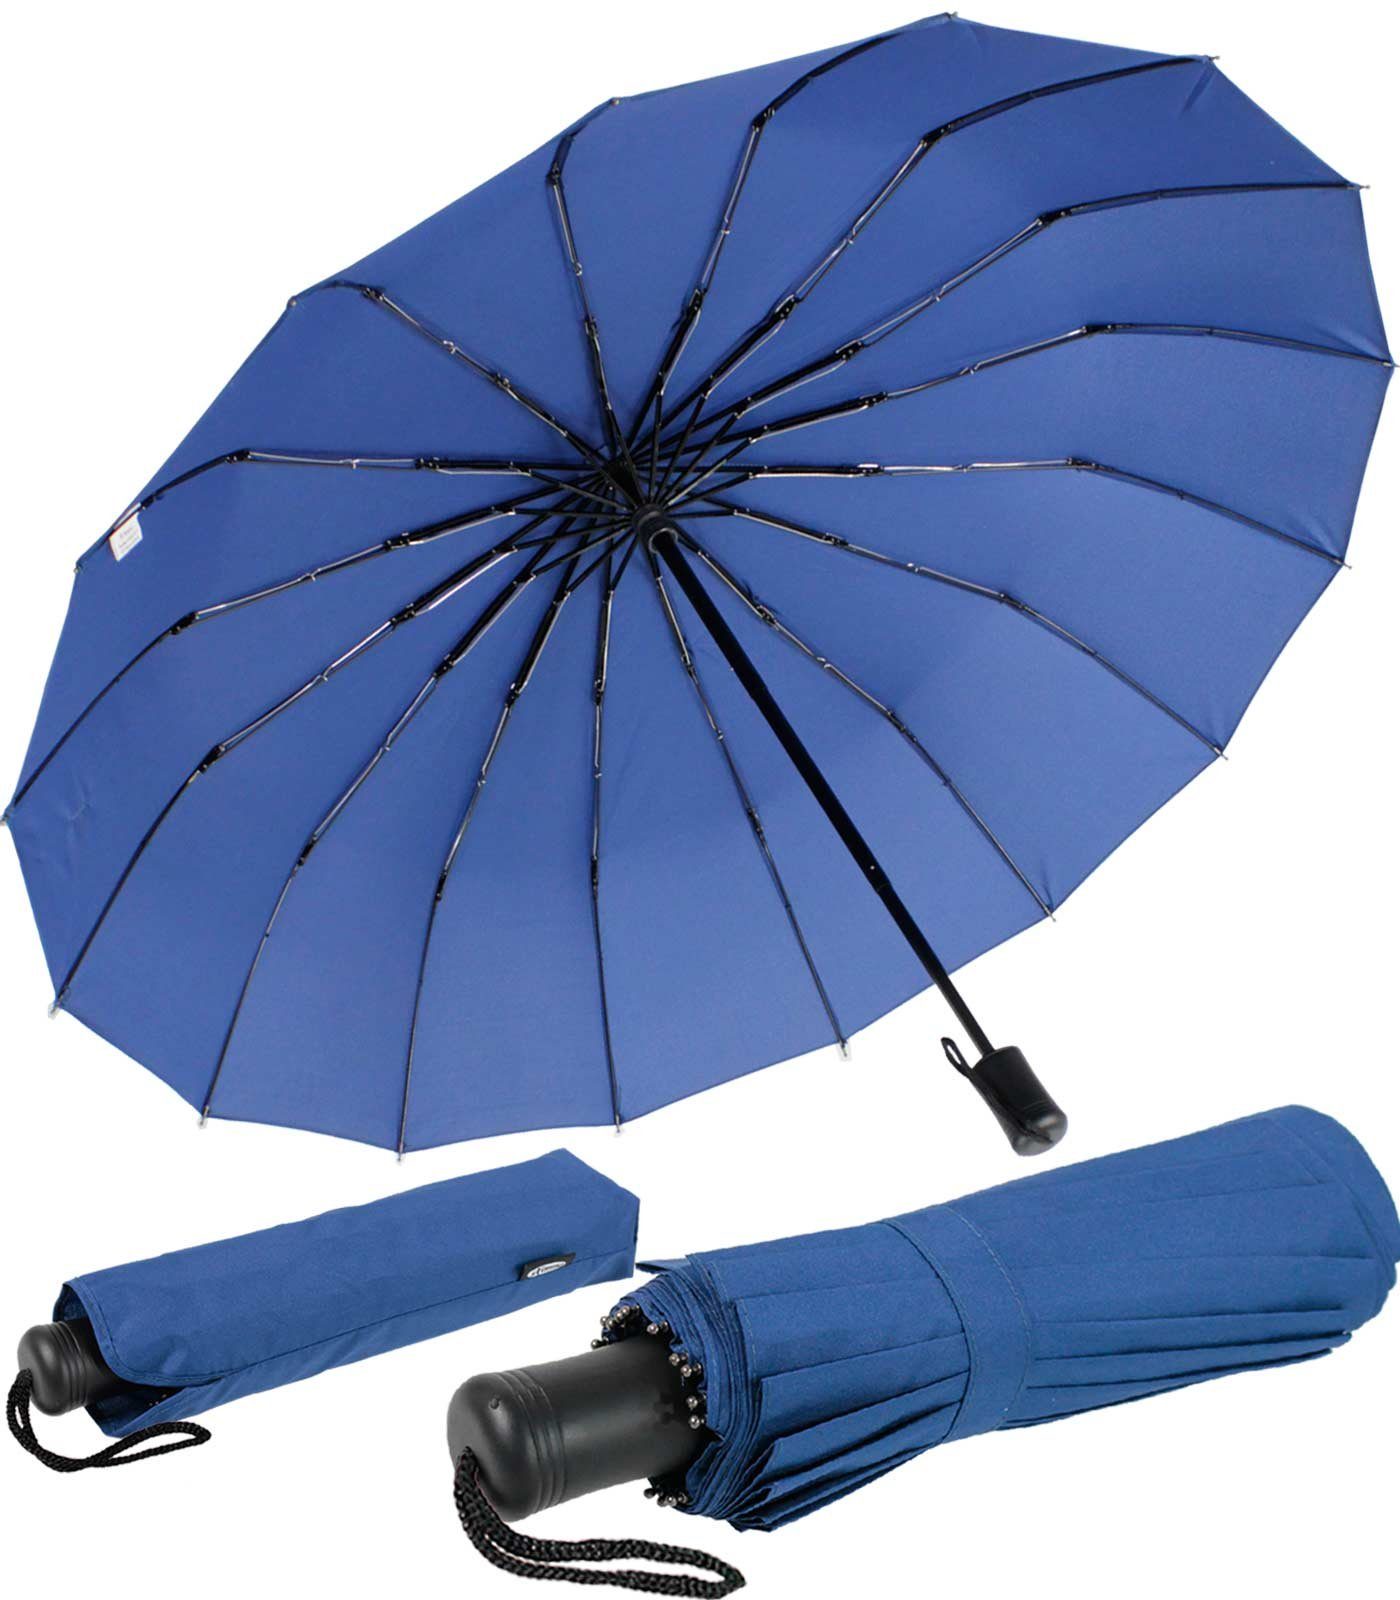 iX-brella Taschenregenschirm Mini mit 16 Streben extra stabil und farbenfroh, auffällig und extravagant blau